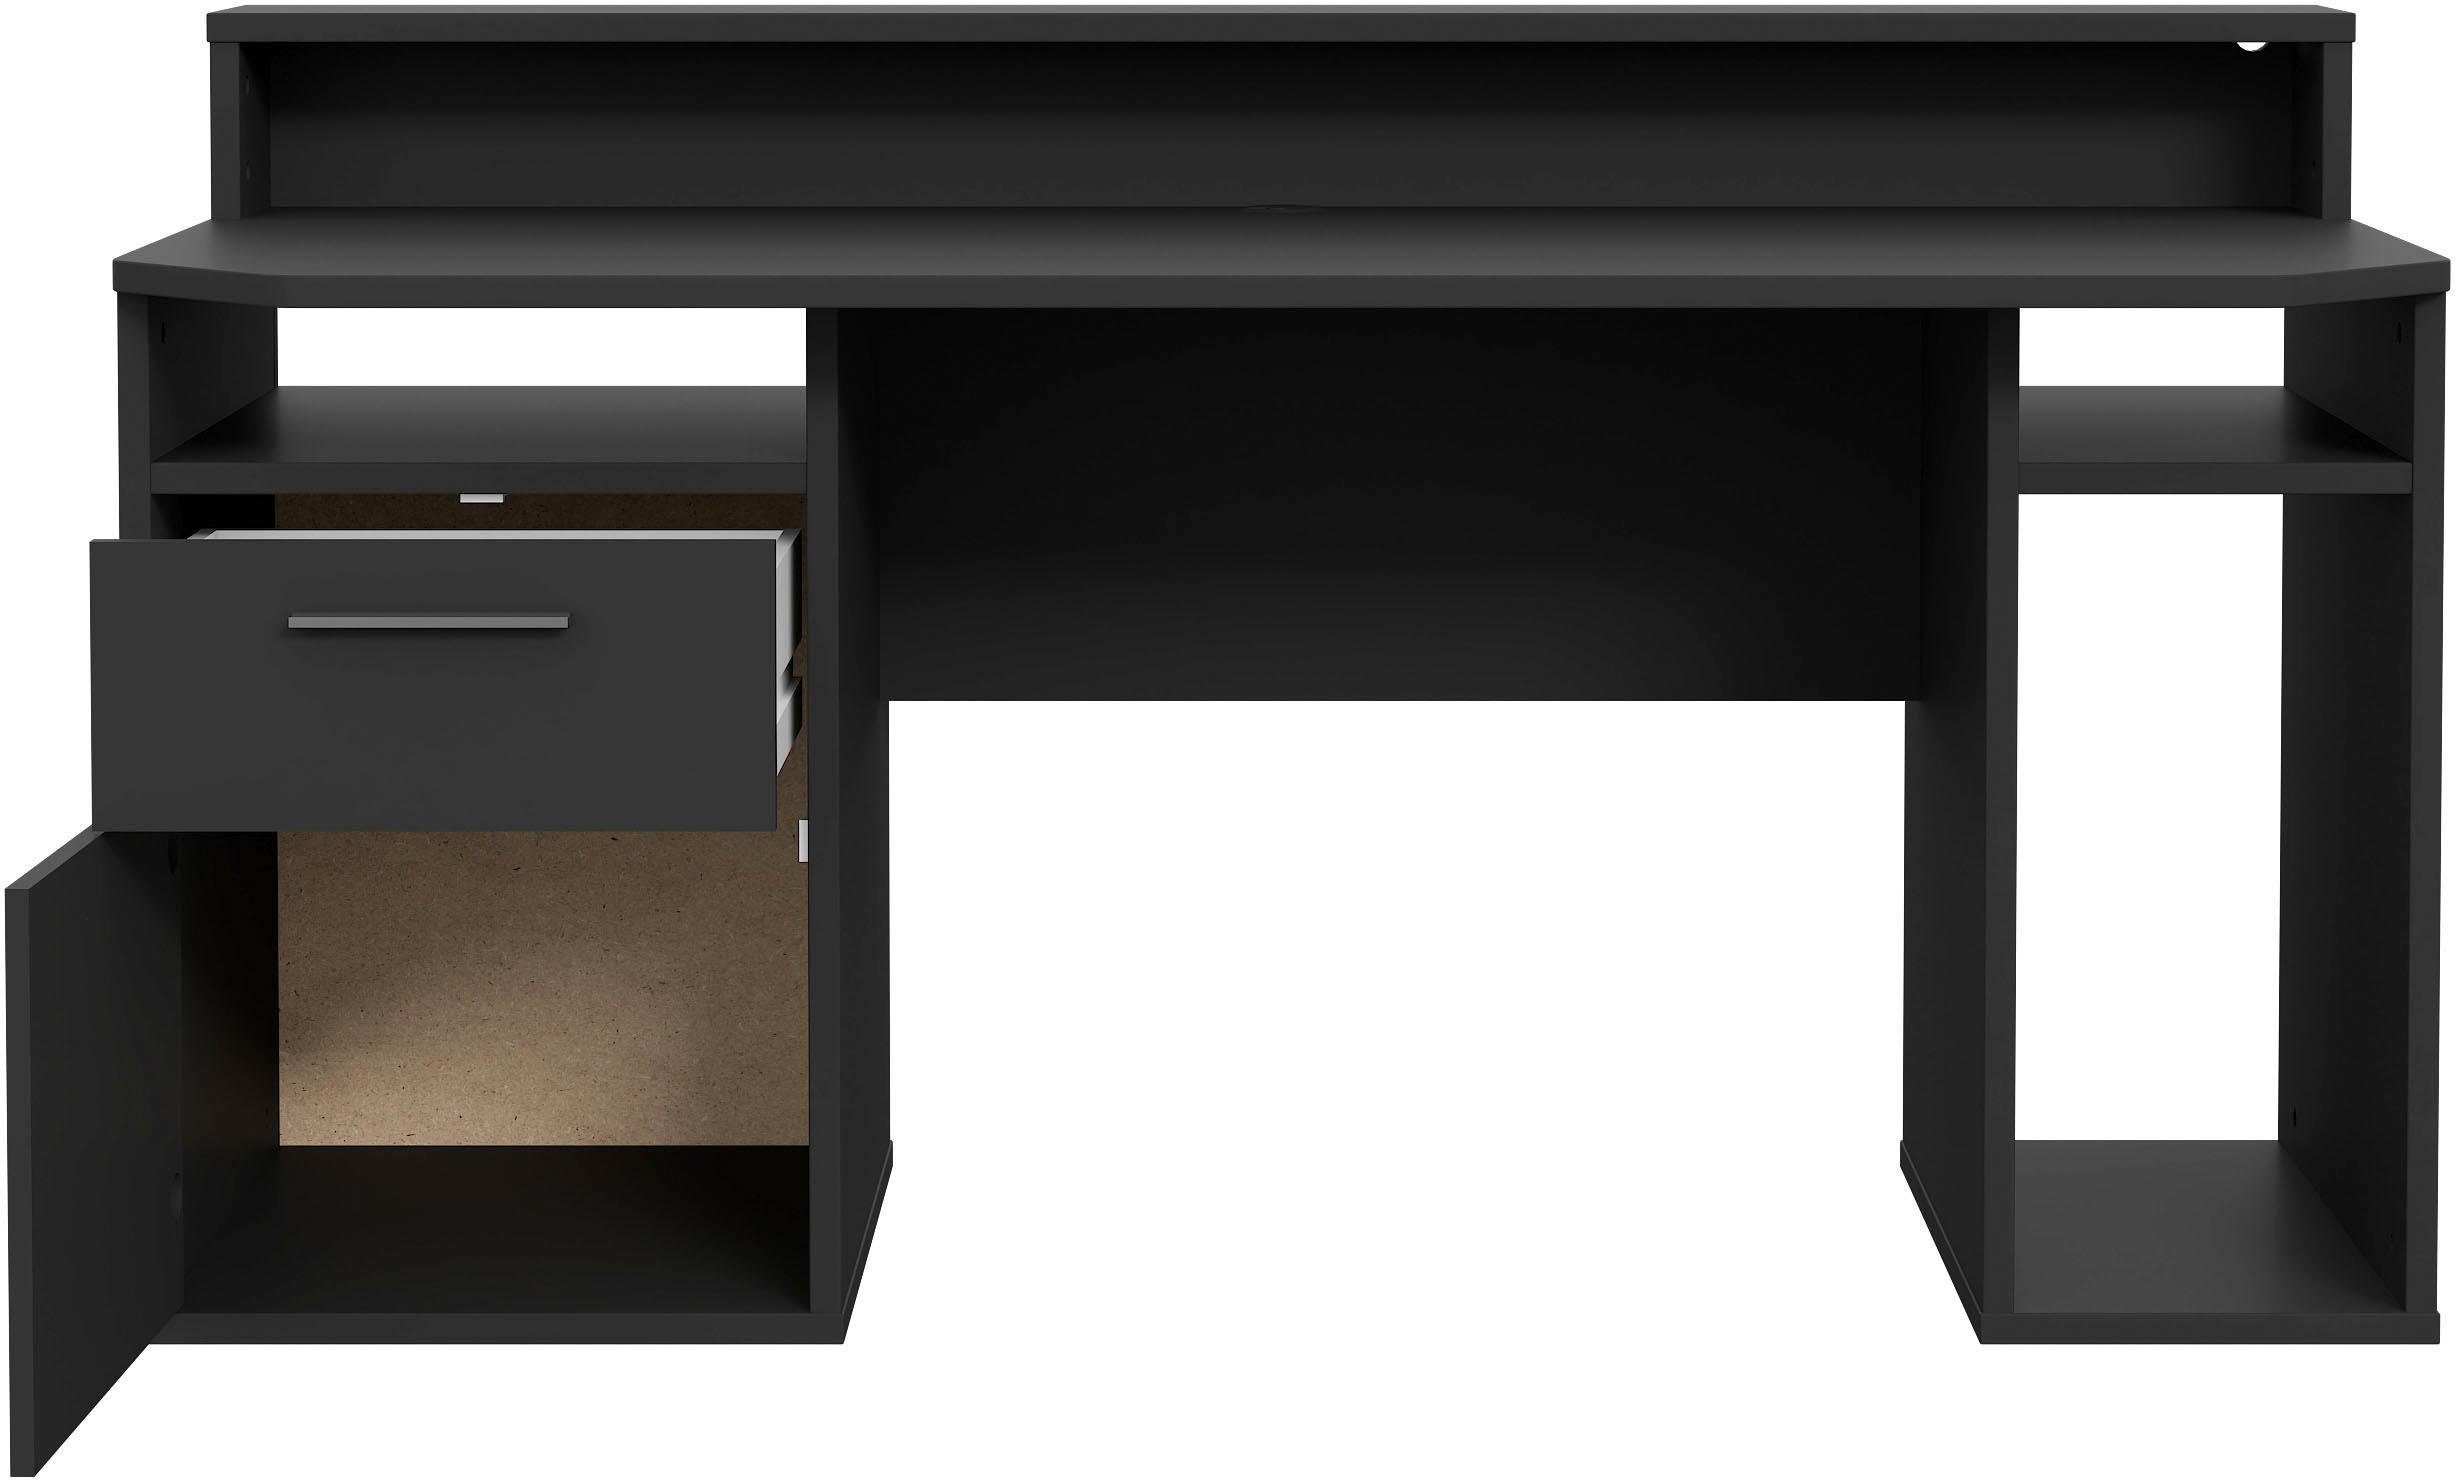 FORTE Gamingtisch Tezaur, schwarz RGB-Beleuchtung mit wahlweise